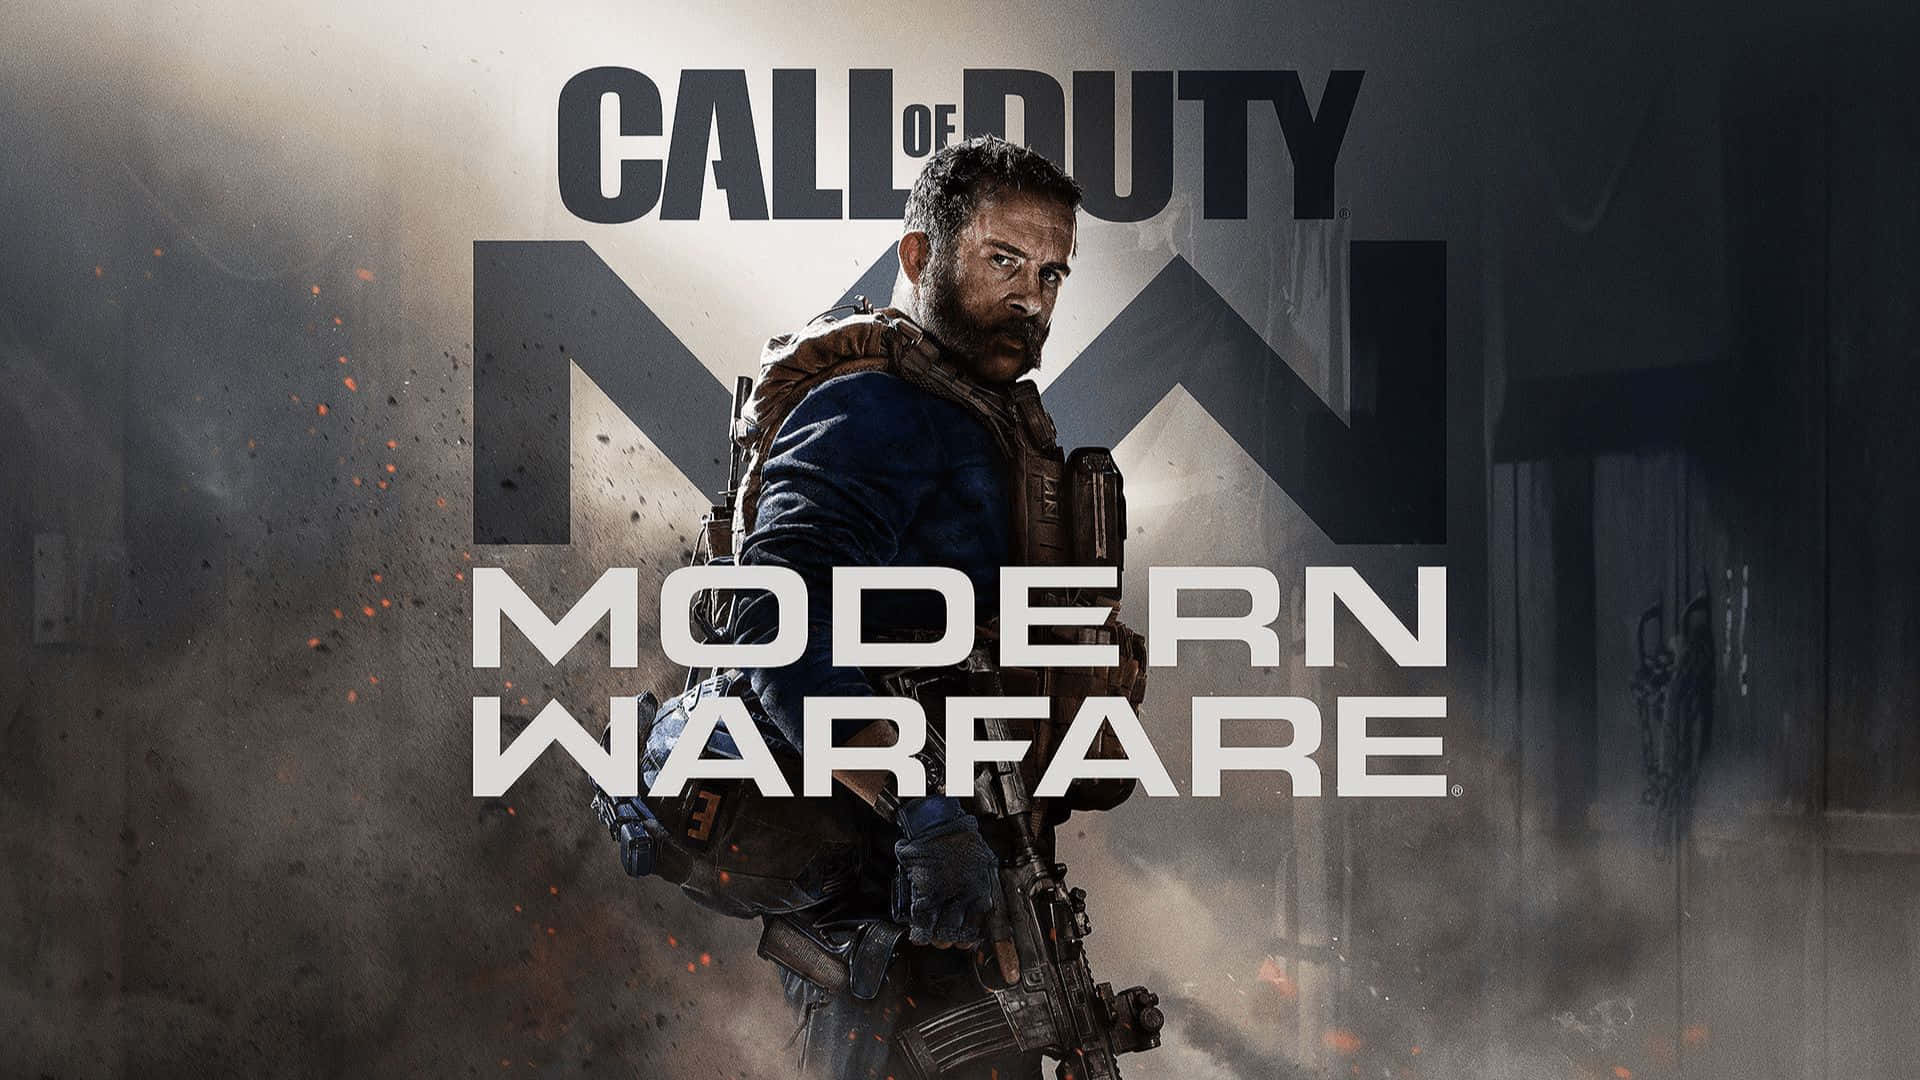 Intensaacción De Call Of Duty Con Un Soldado Armado Y Listo Para La Batalla. Fondo de pantalla